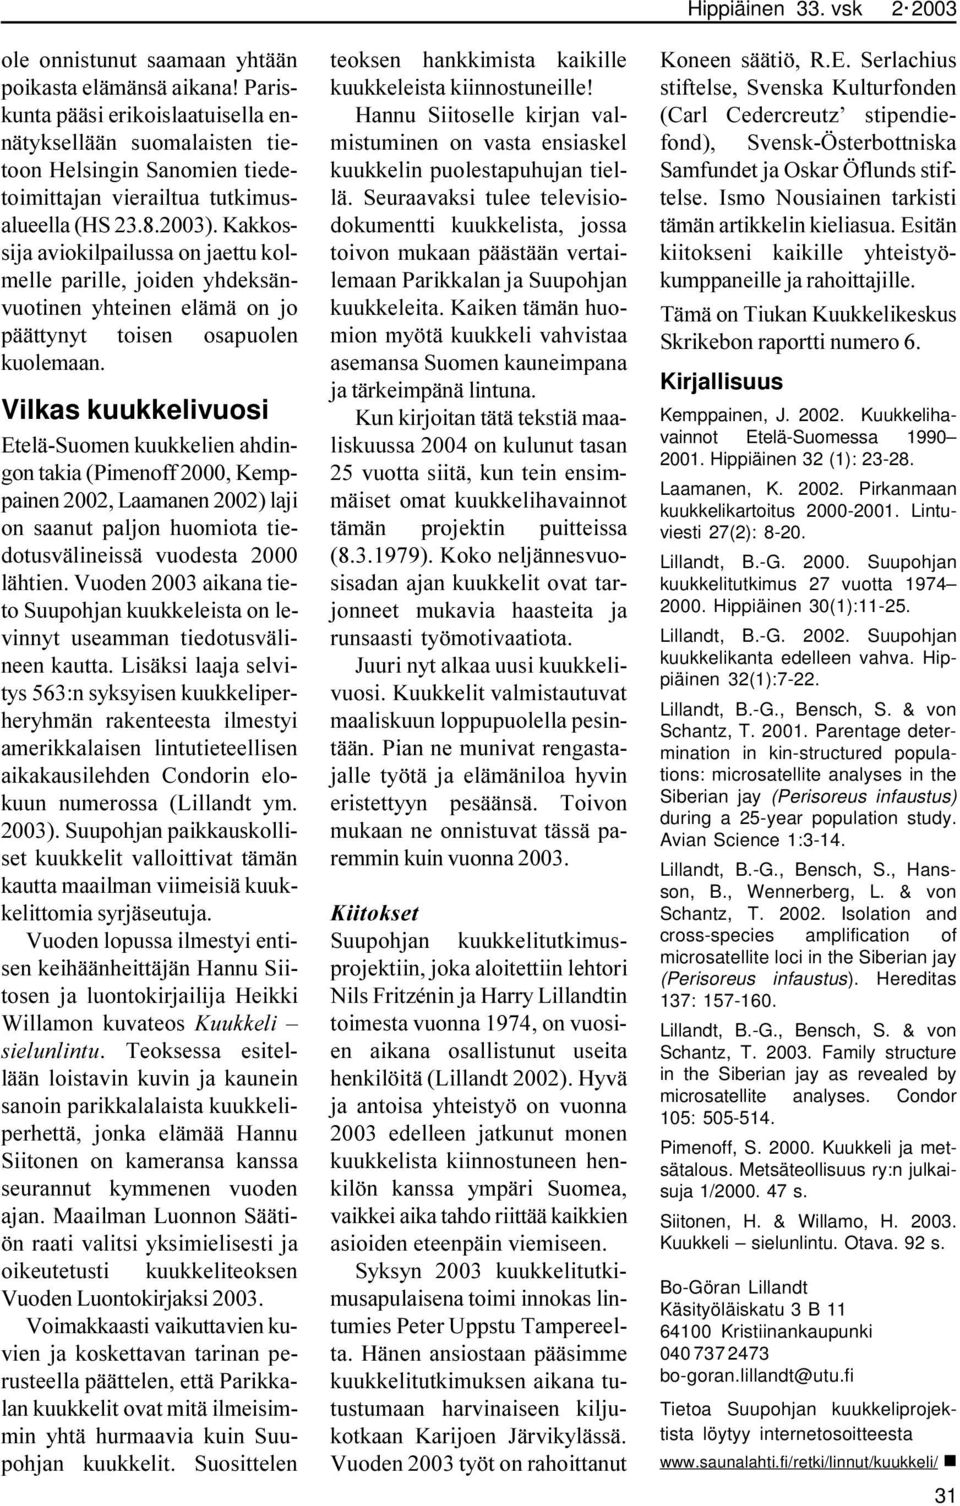 Vilkas kuukkelivuosi Etelä-Suomen kuukkelien ahdingon takia (Pimenoff 2000, Kemppainen 2002, Laamanen 2002) laji on saanut paljon huomiota tiedotusvälineissä vuodesta 2000 lähtien.